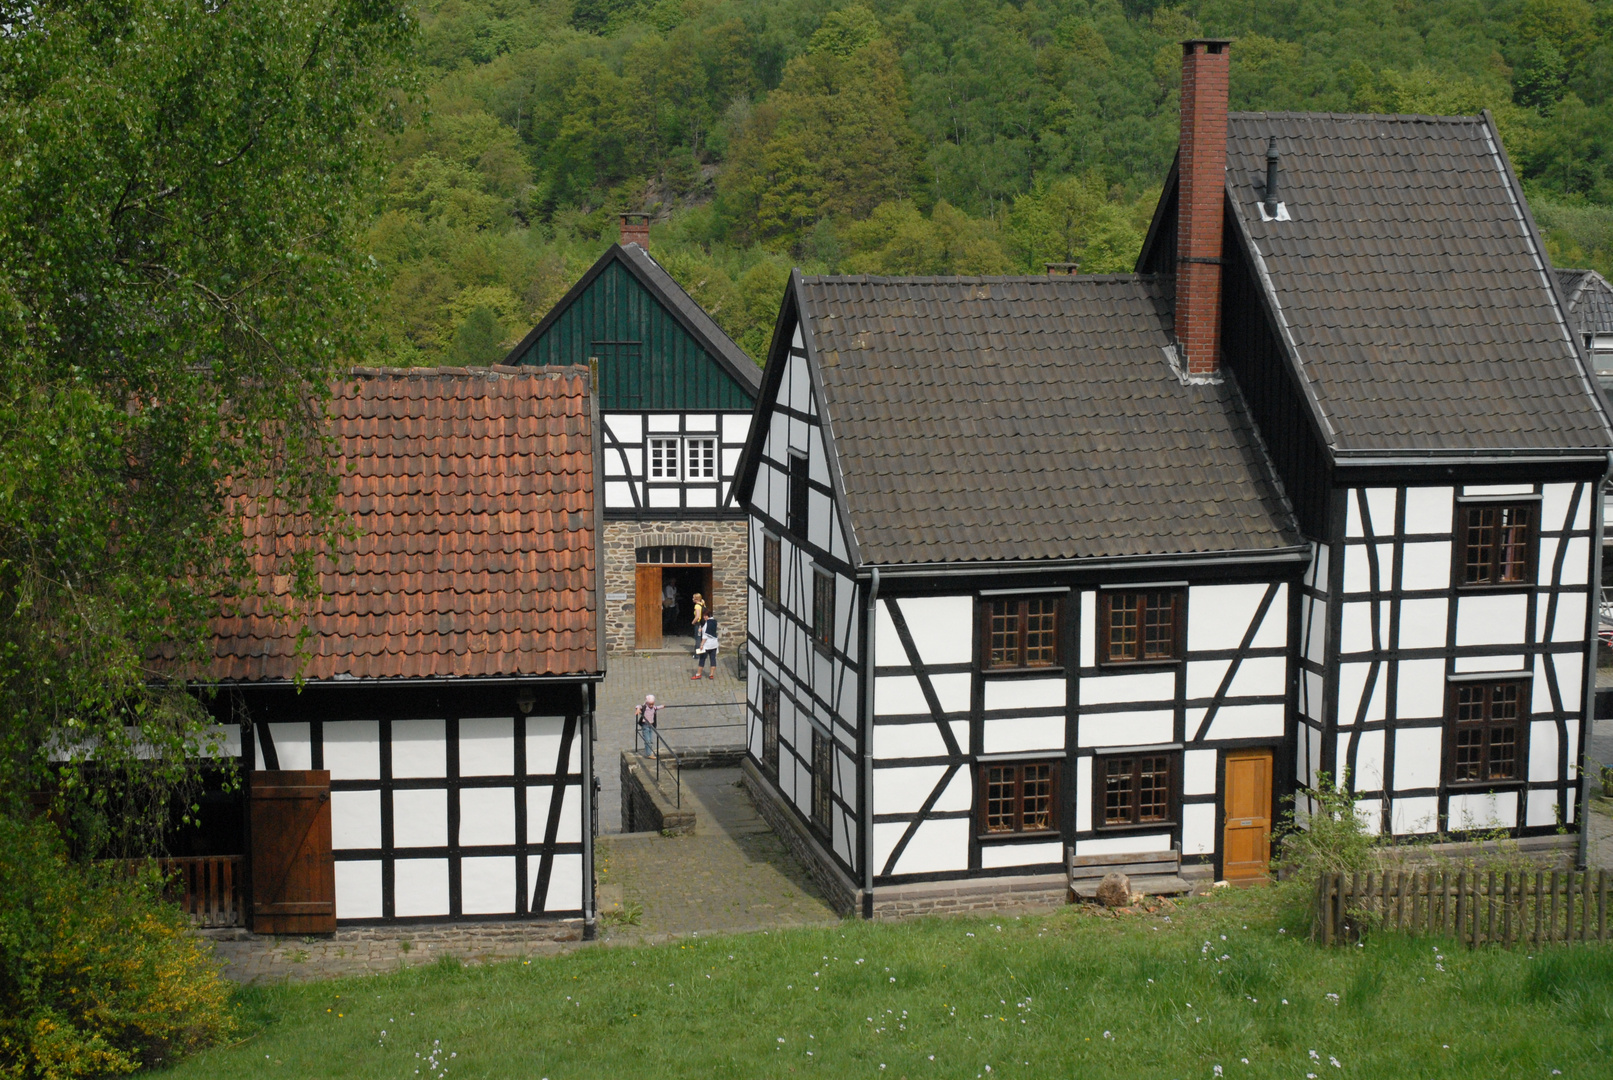 Hagen Freilichtmuseum